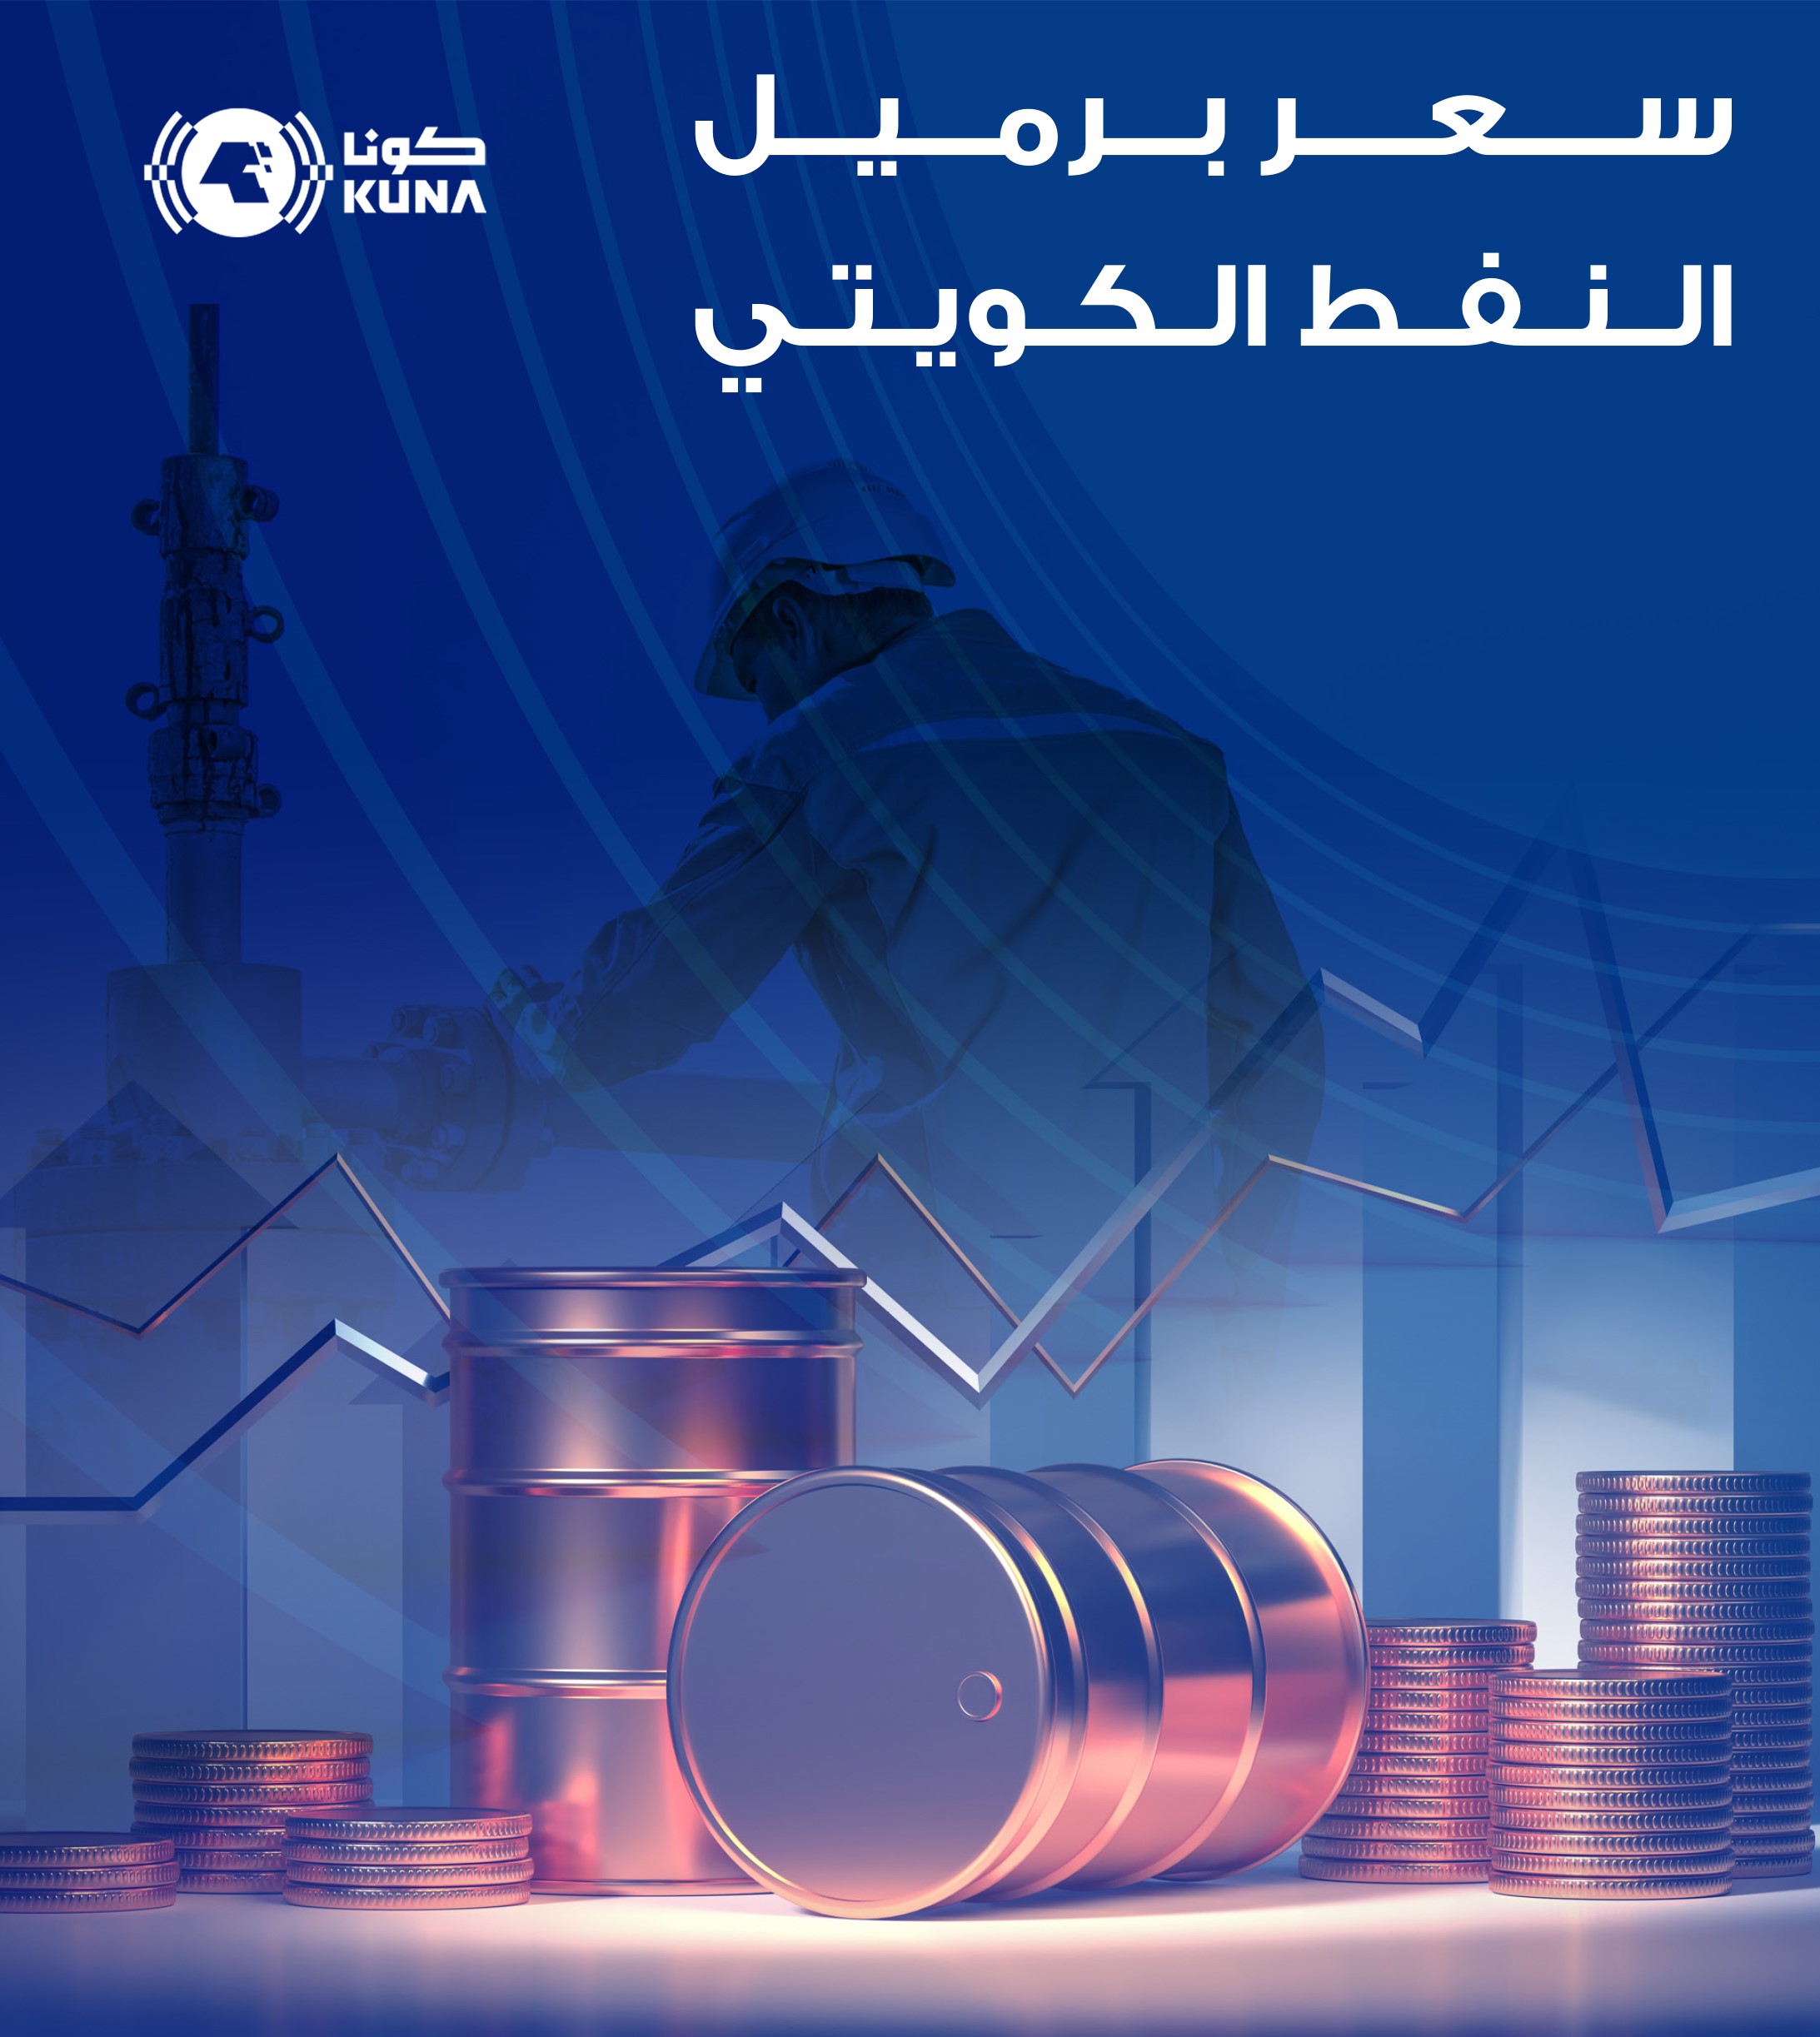 سعر برميل النفط الكويتي ينخفض 04ر1 دولار ليبلغ 40ر85 دولار                                                                                                                                                                                                